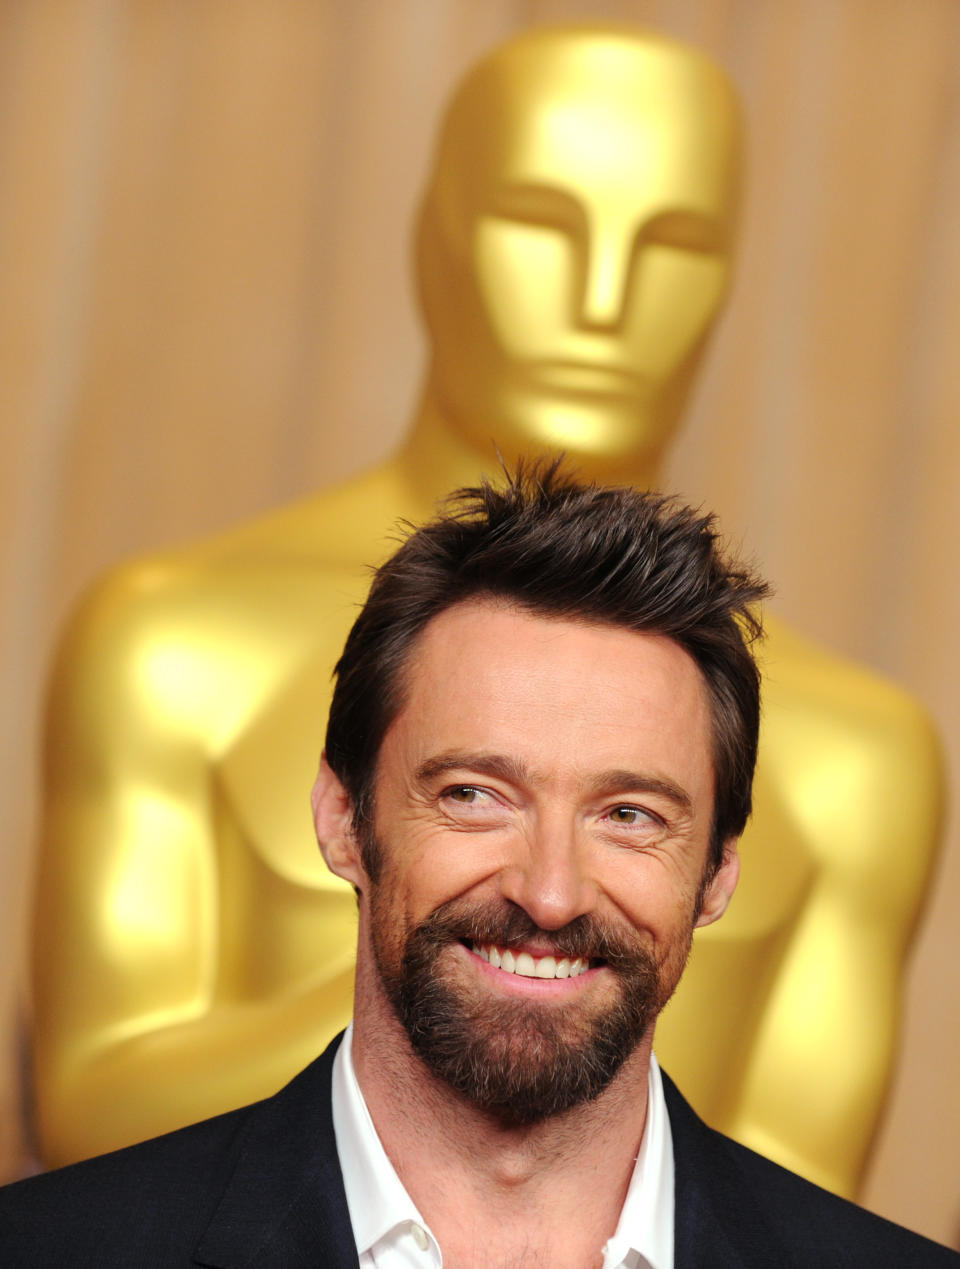 Hugh Jackman solo estuvo nominado en una ocasión al Oscar. (Foto de Robyn Beck/AFP via Getty Images)